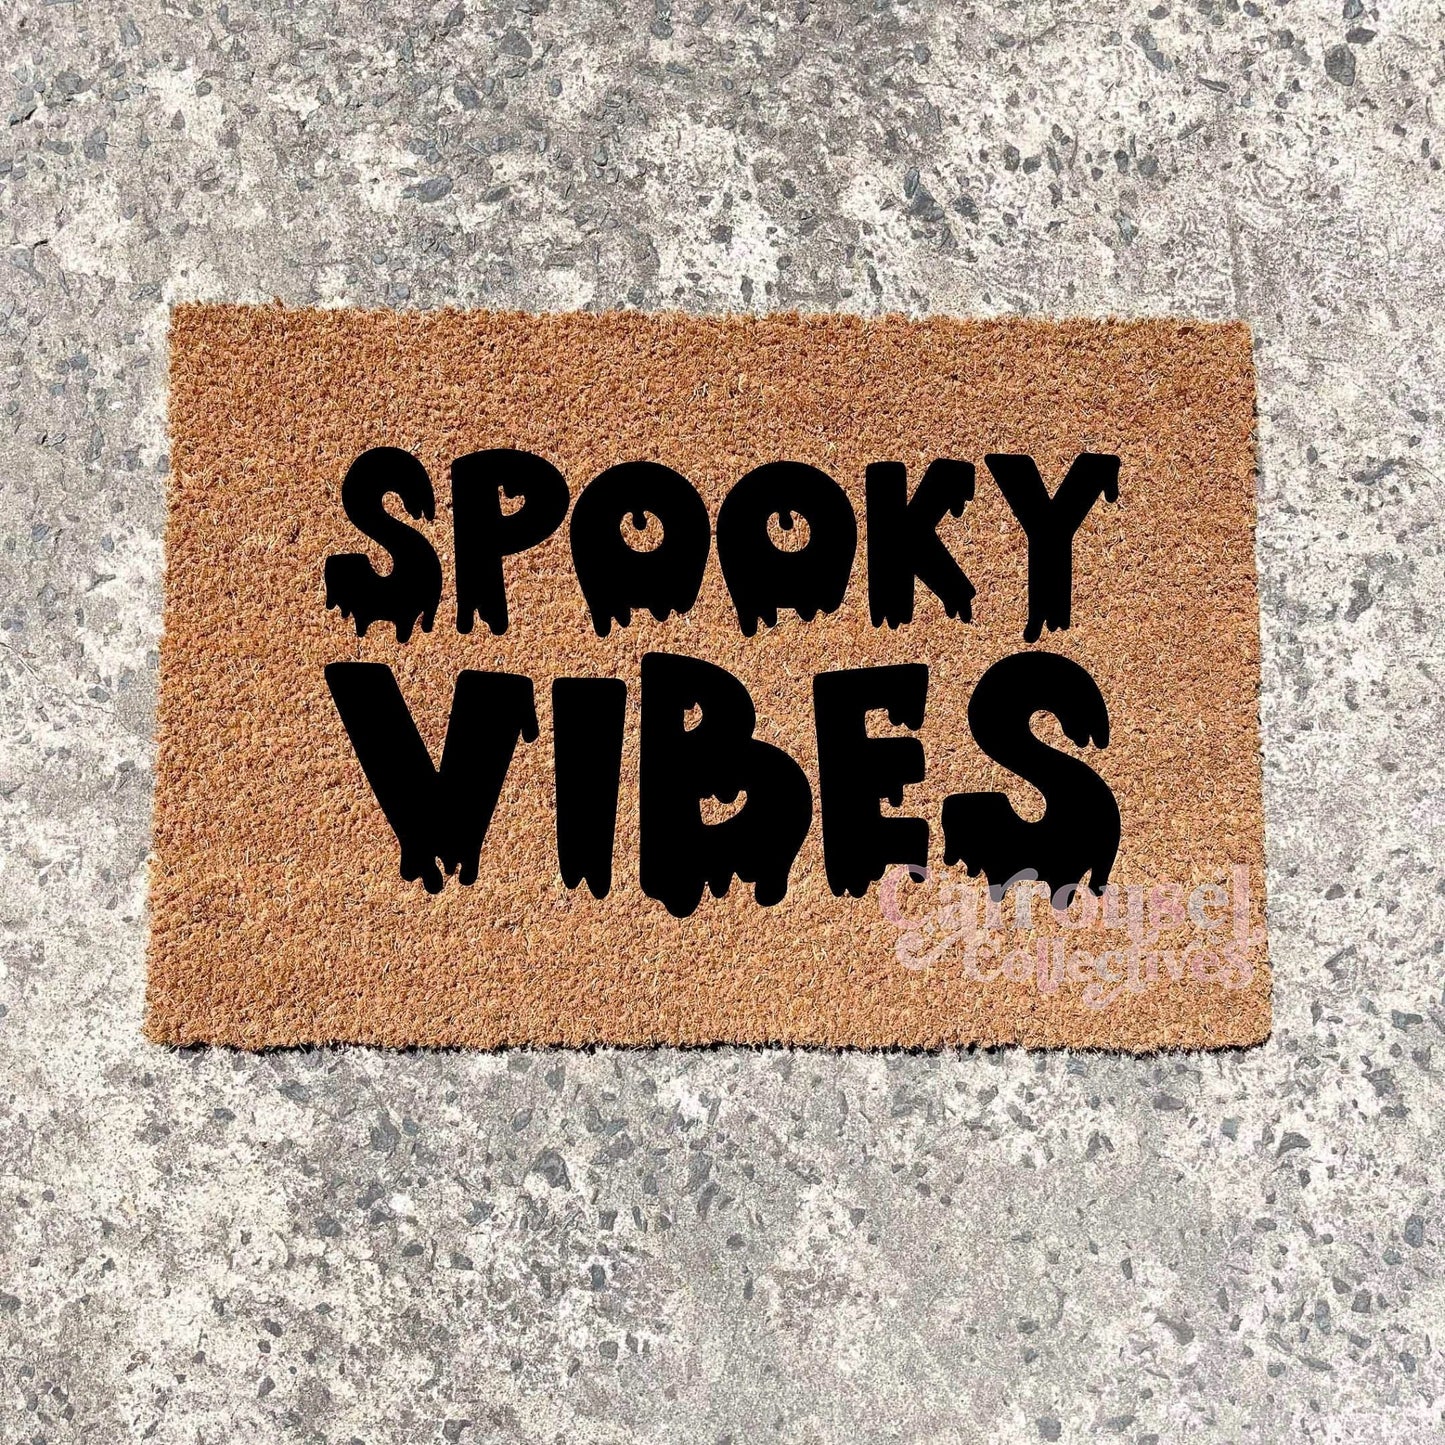 Spooky Vibes doormat, Halloween Doormat, Spooky Doormat, Creepy Doormat